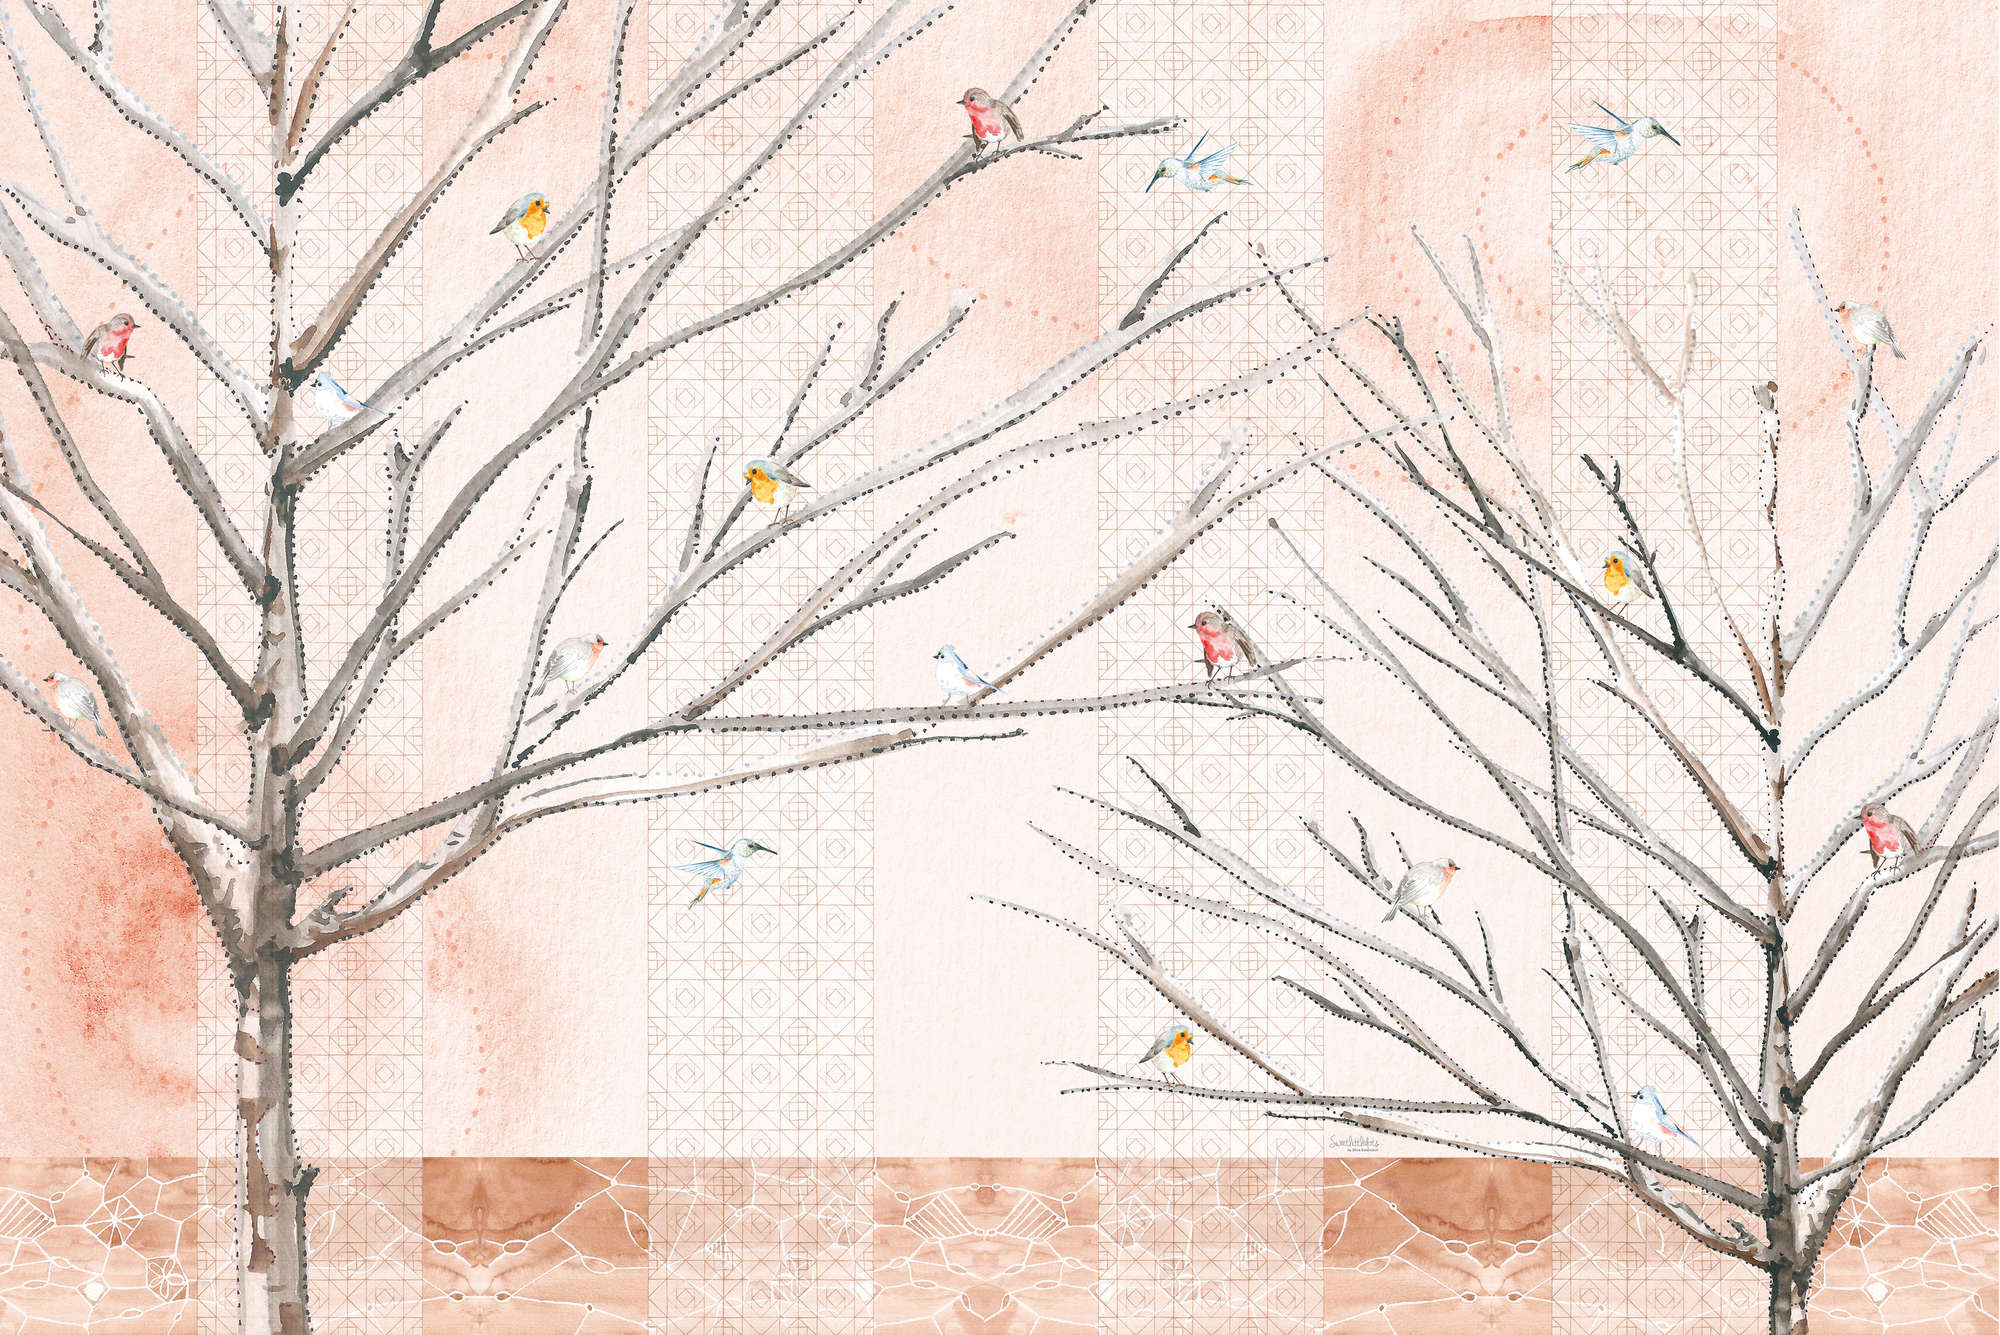             Künstlerische Fototapete Bäume mit Vögeln in Beige und Braun auf Premium Glattvlies
        